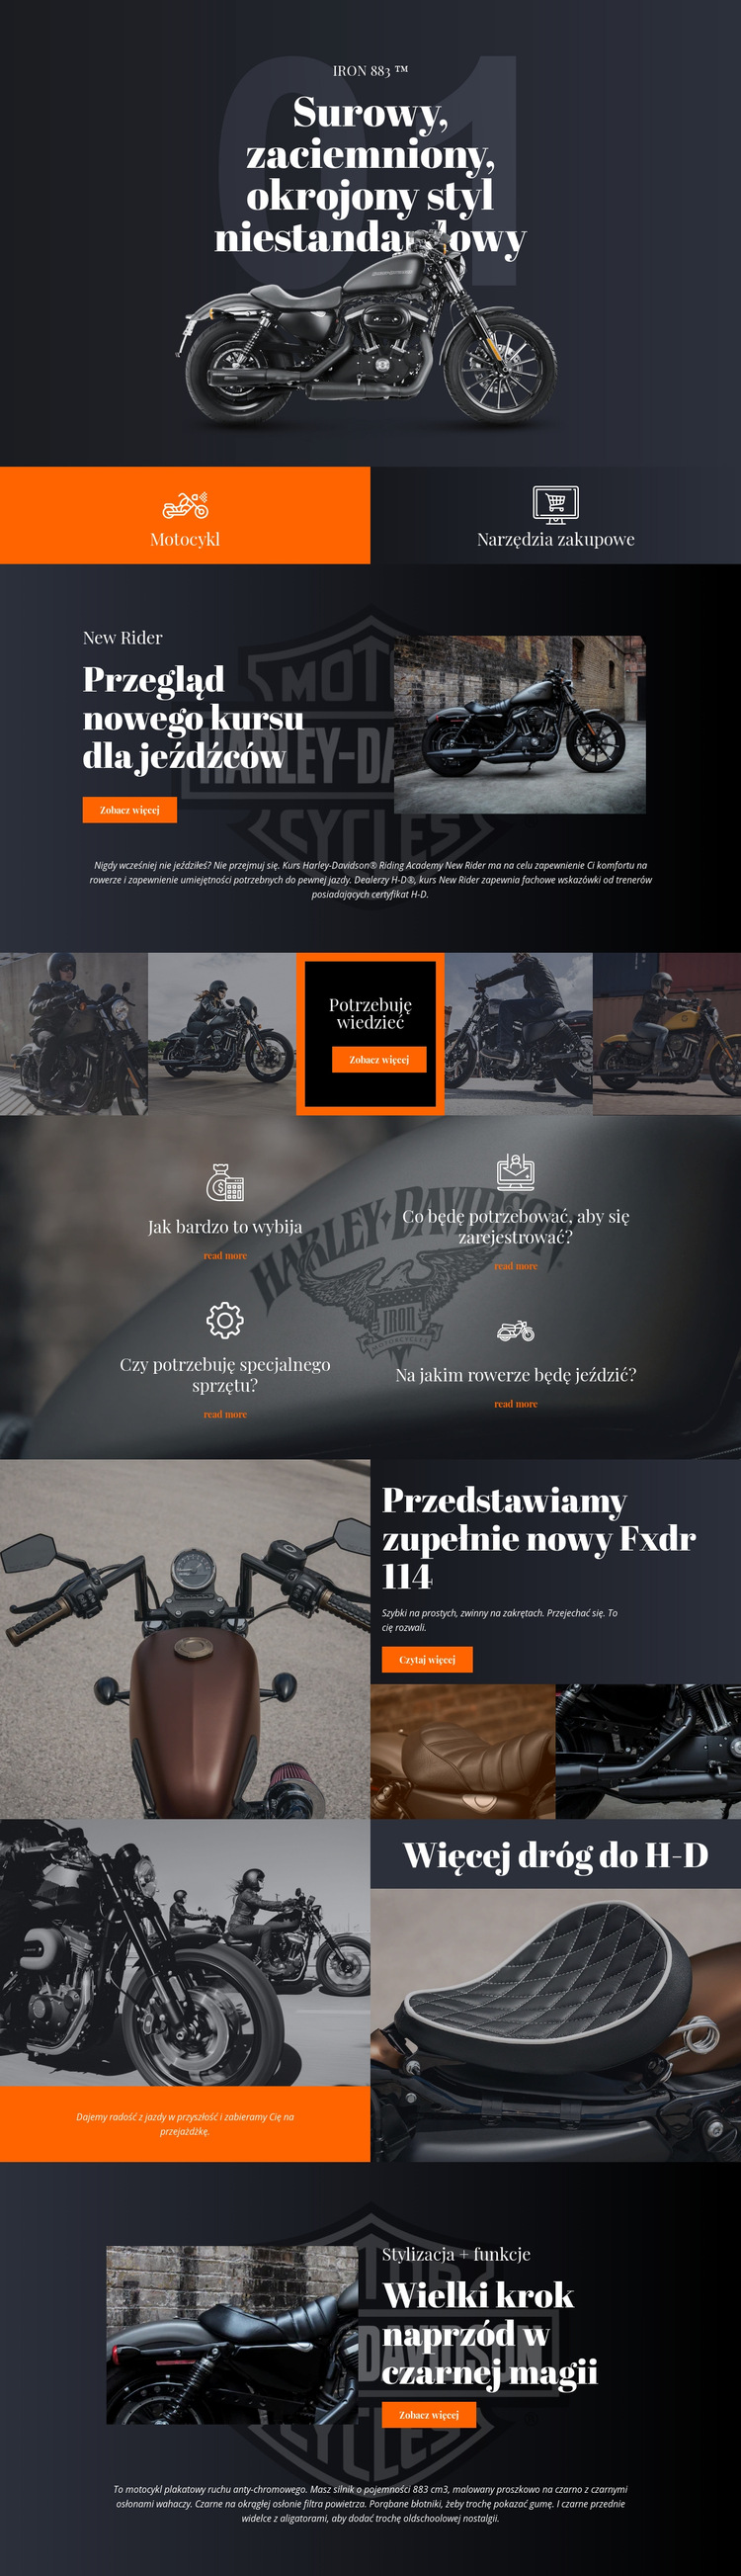 Harley Davidson Szablon witryny sieci Web